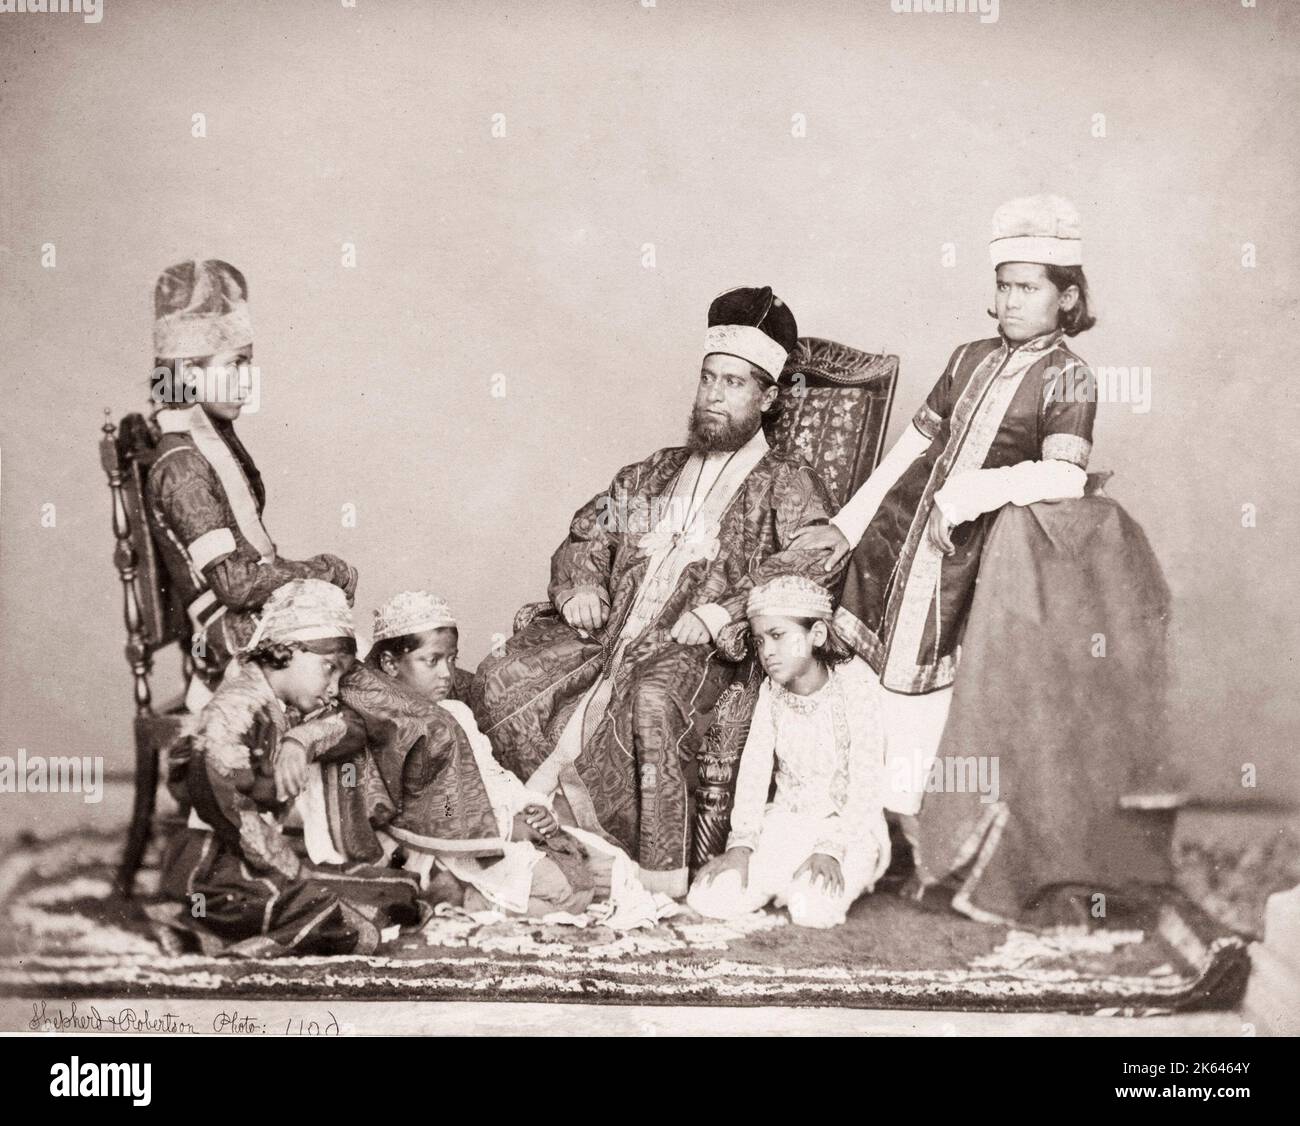 Vintage del siglo xix fotografía India - Moguls Pastor y Robertson, 1860 Foto de stock